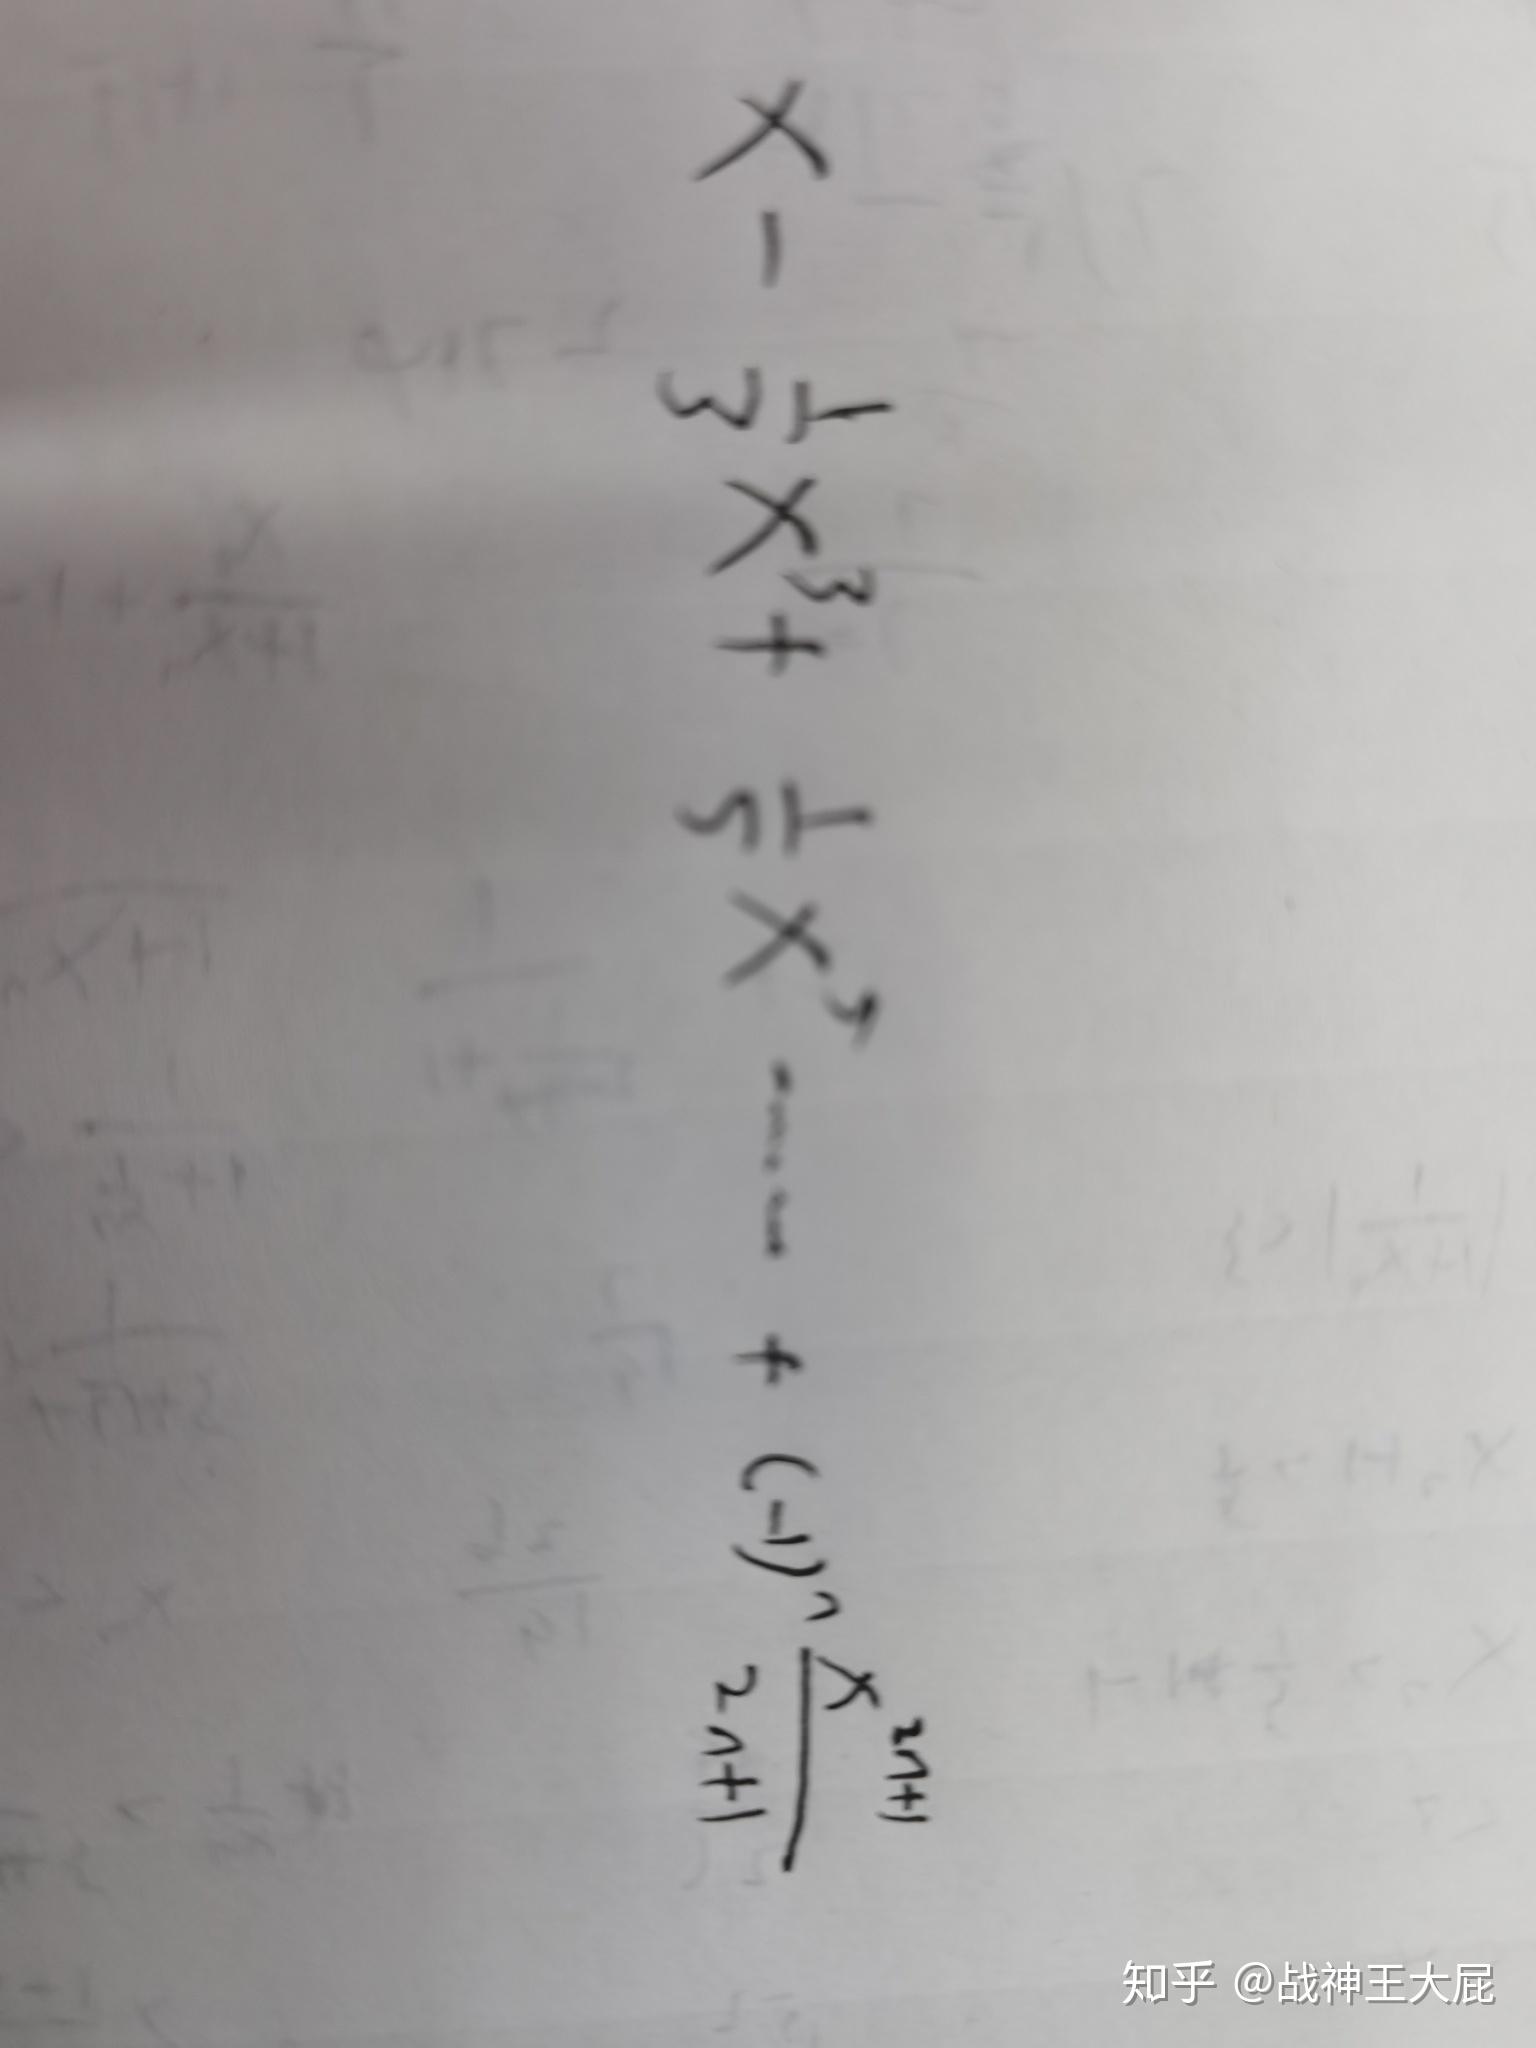 arctan(x)的等价无穷小为什么是x?